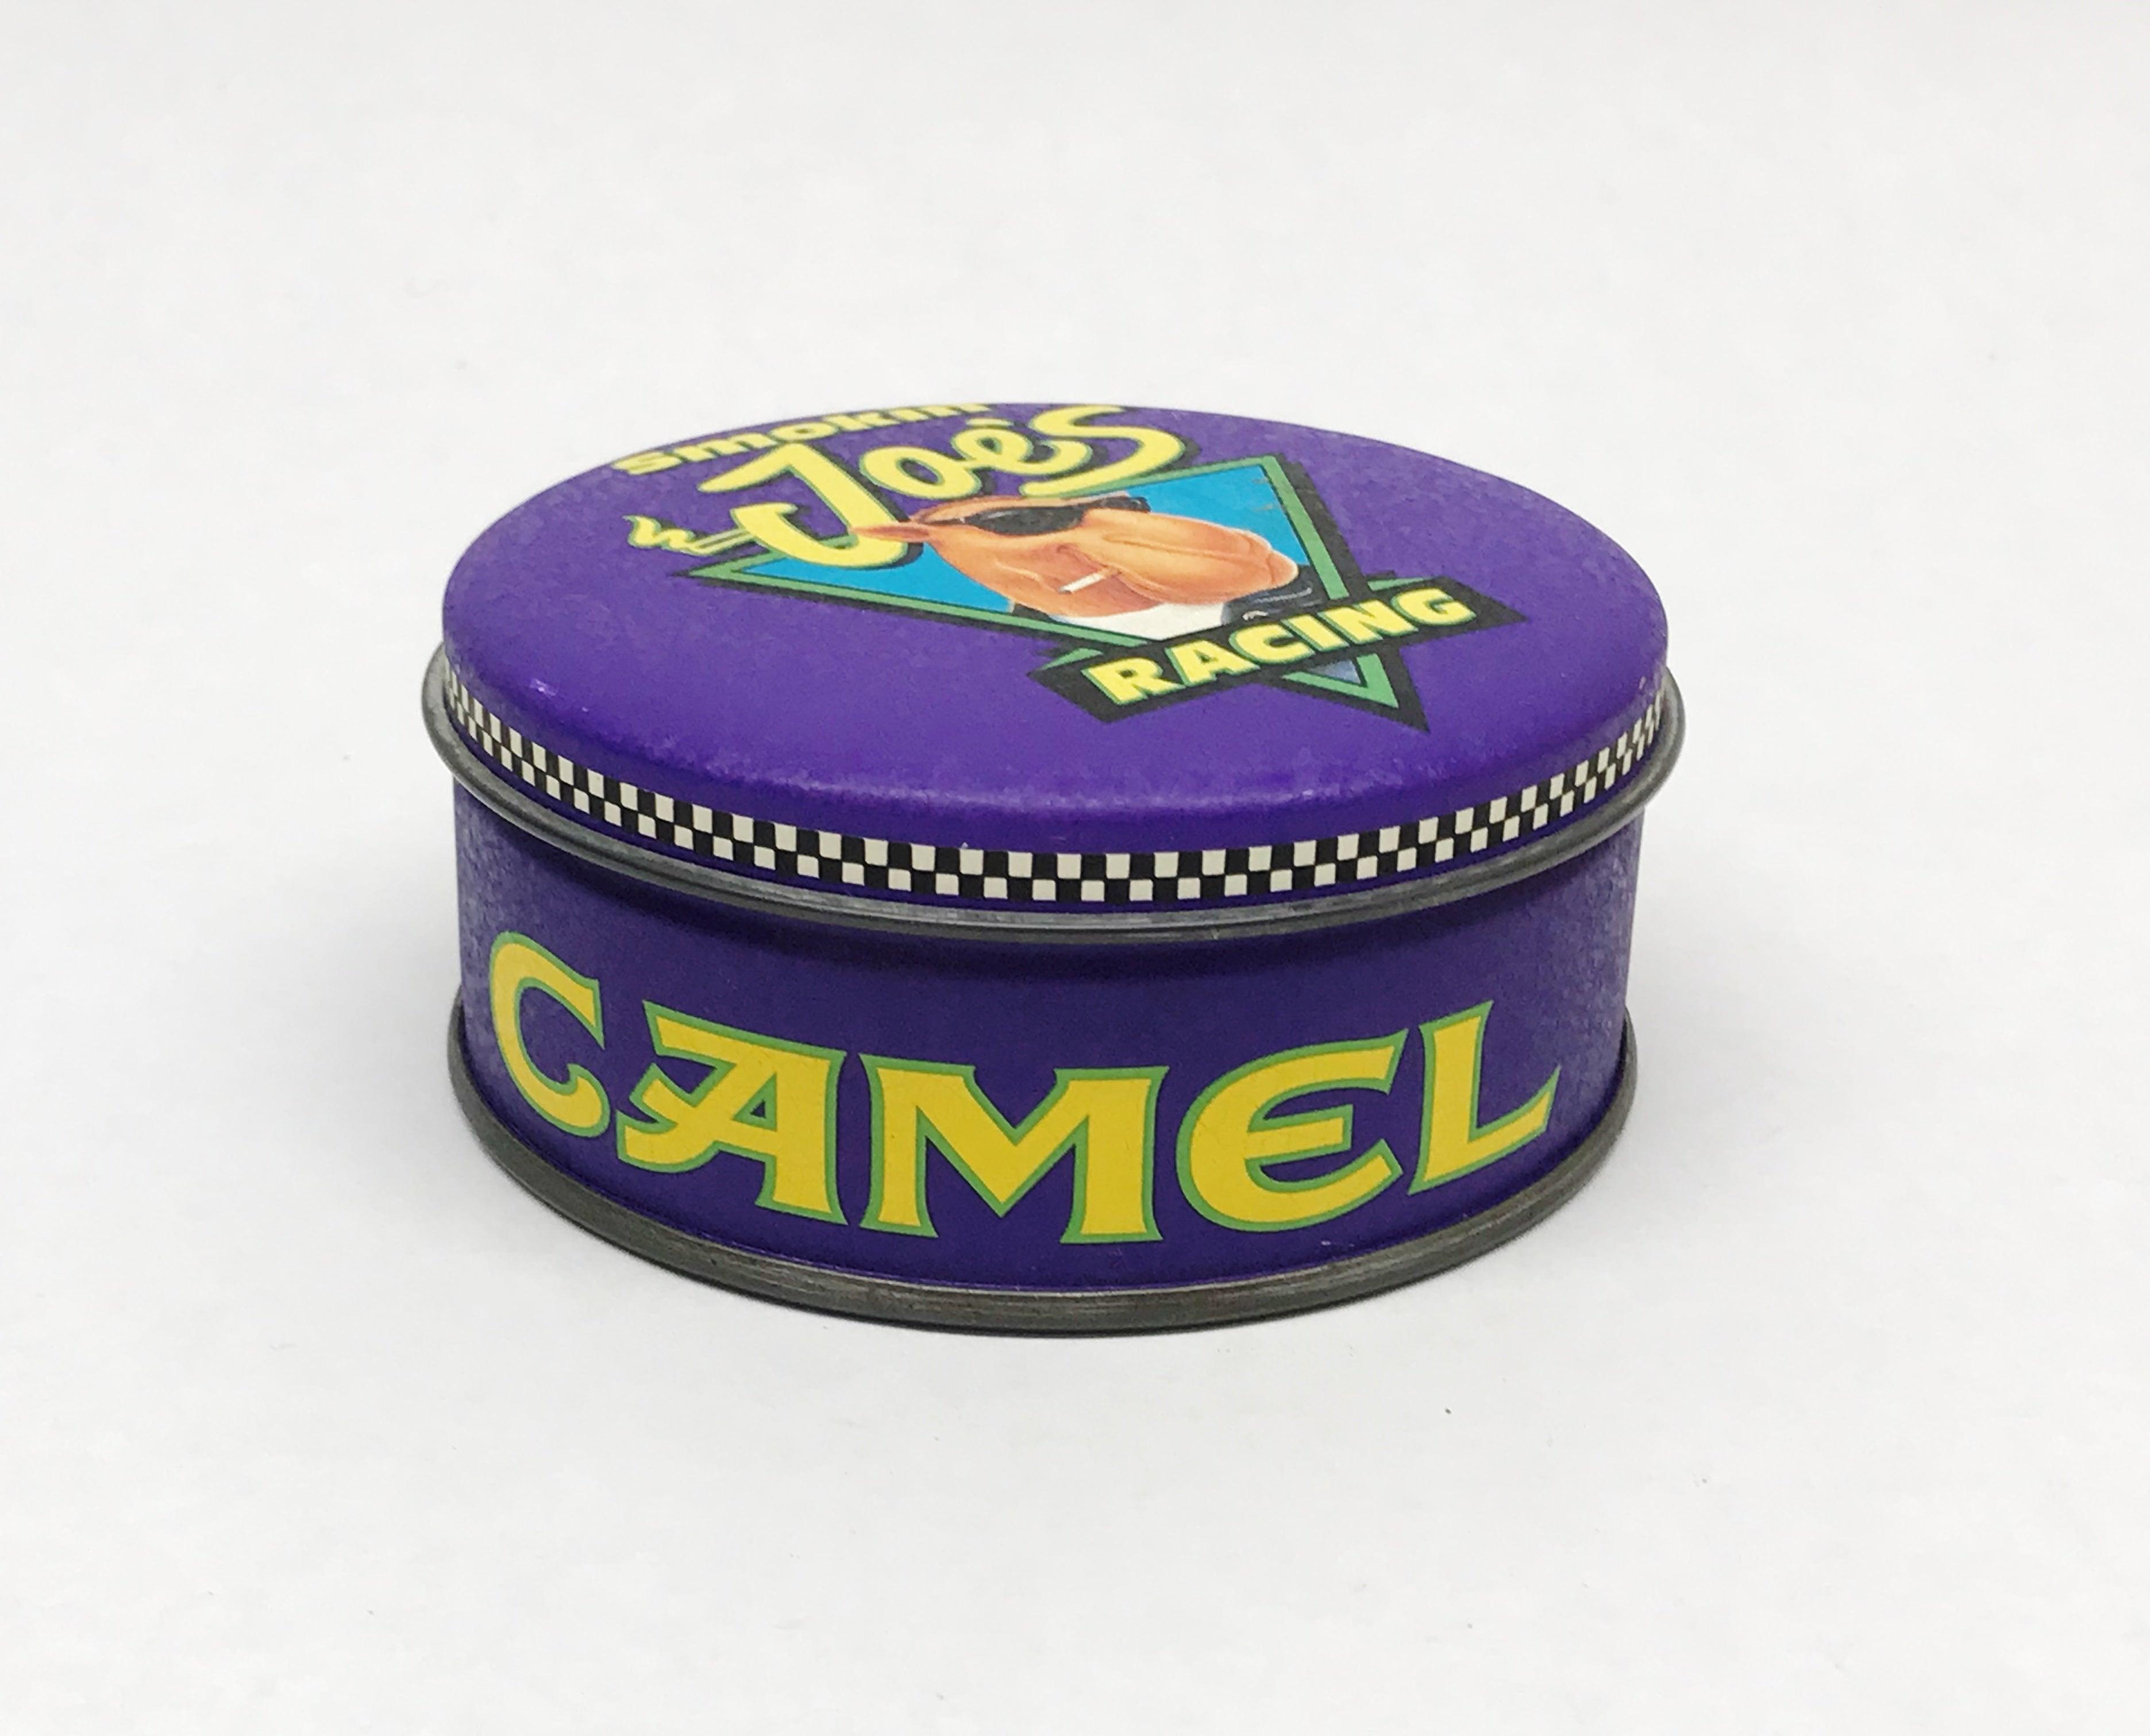 New 1994 X Camel Smokin' Joe's Racing Zippo Lighter In Collector Tin